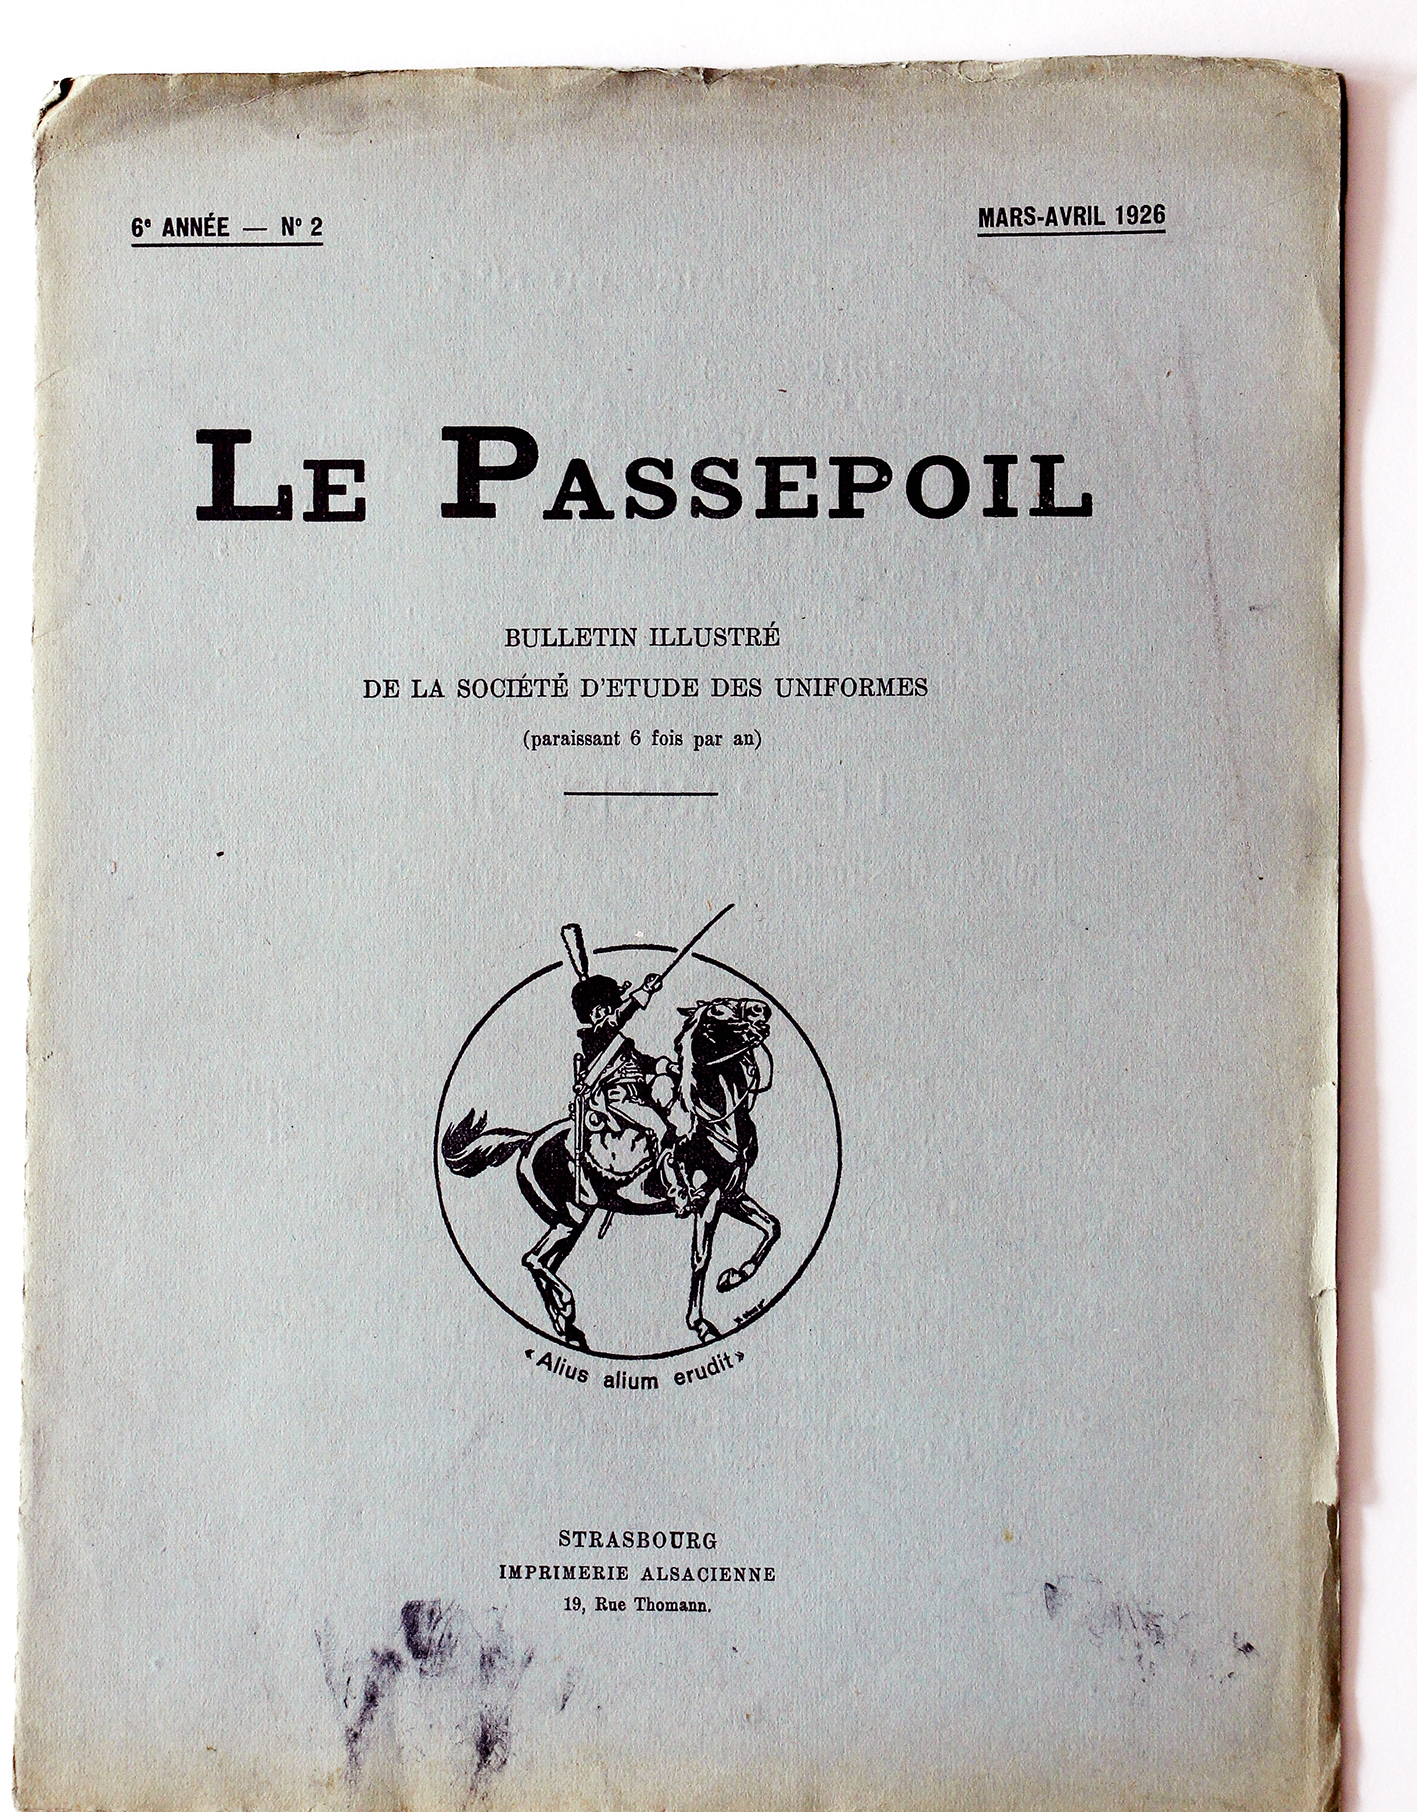 Le passepoil année 1926 complète - 6 année N°2 - Bucquoy - Uniformes Armée Française